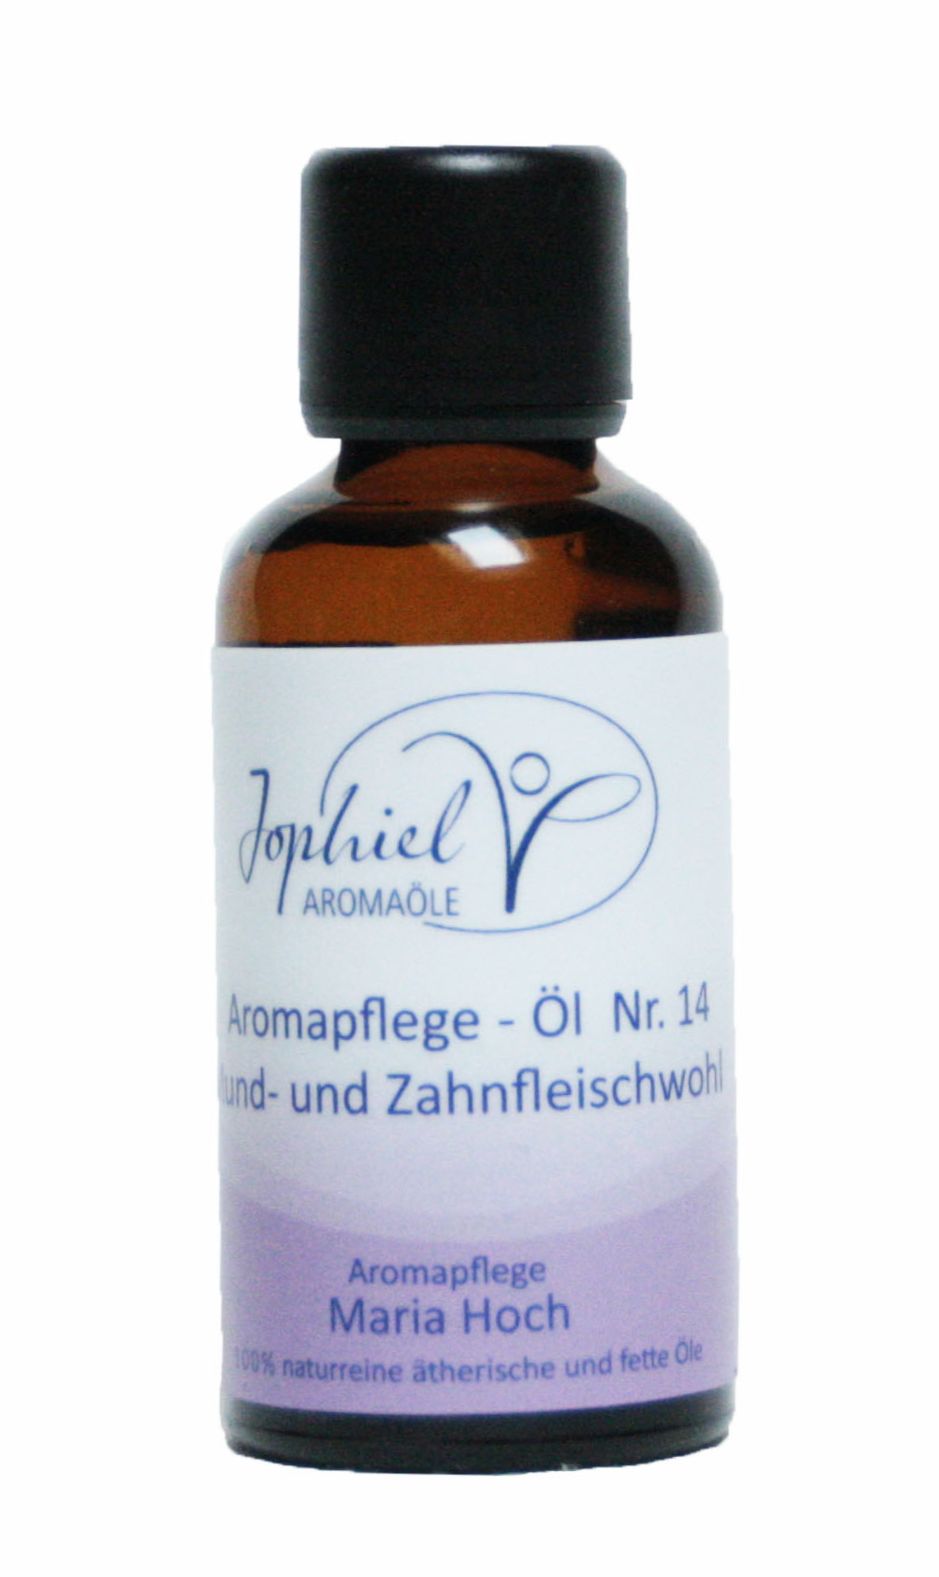 Aromapflege-Öl Nr. 14 Mund- und Zahnfleischwohl  50 ml  Bio